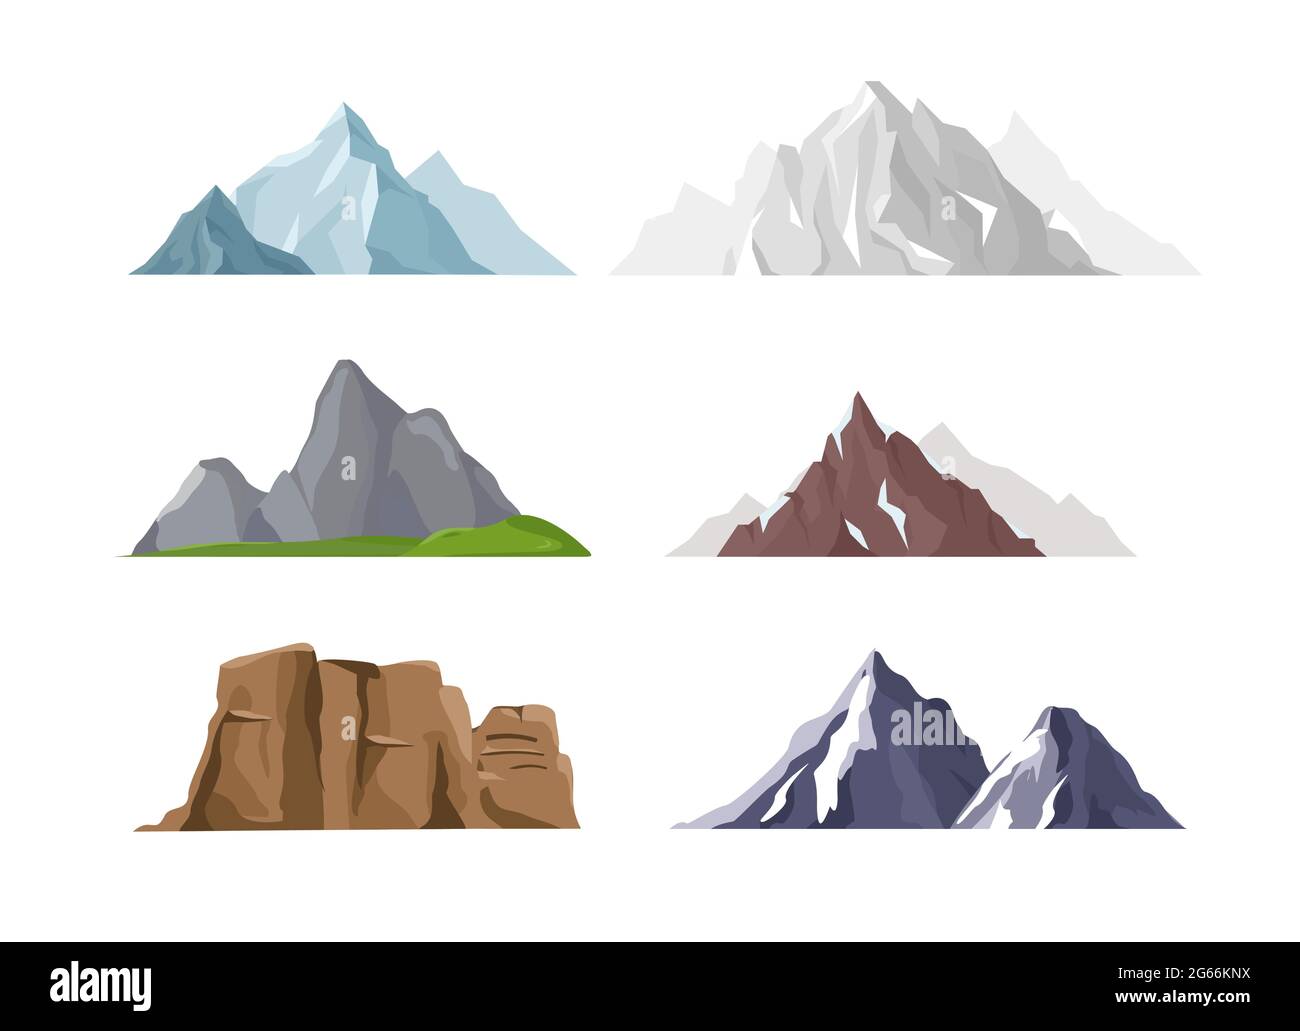 Vektor-Illustration Set von Berg-Icons in flachen Cartoon-Stil. Verschiedene Berge und Hügel Sammlung isoliert auf weißem Hintergrund. Stock Vektor